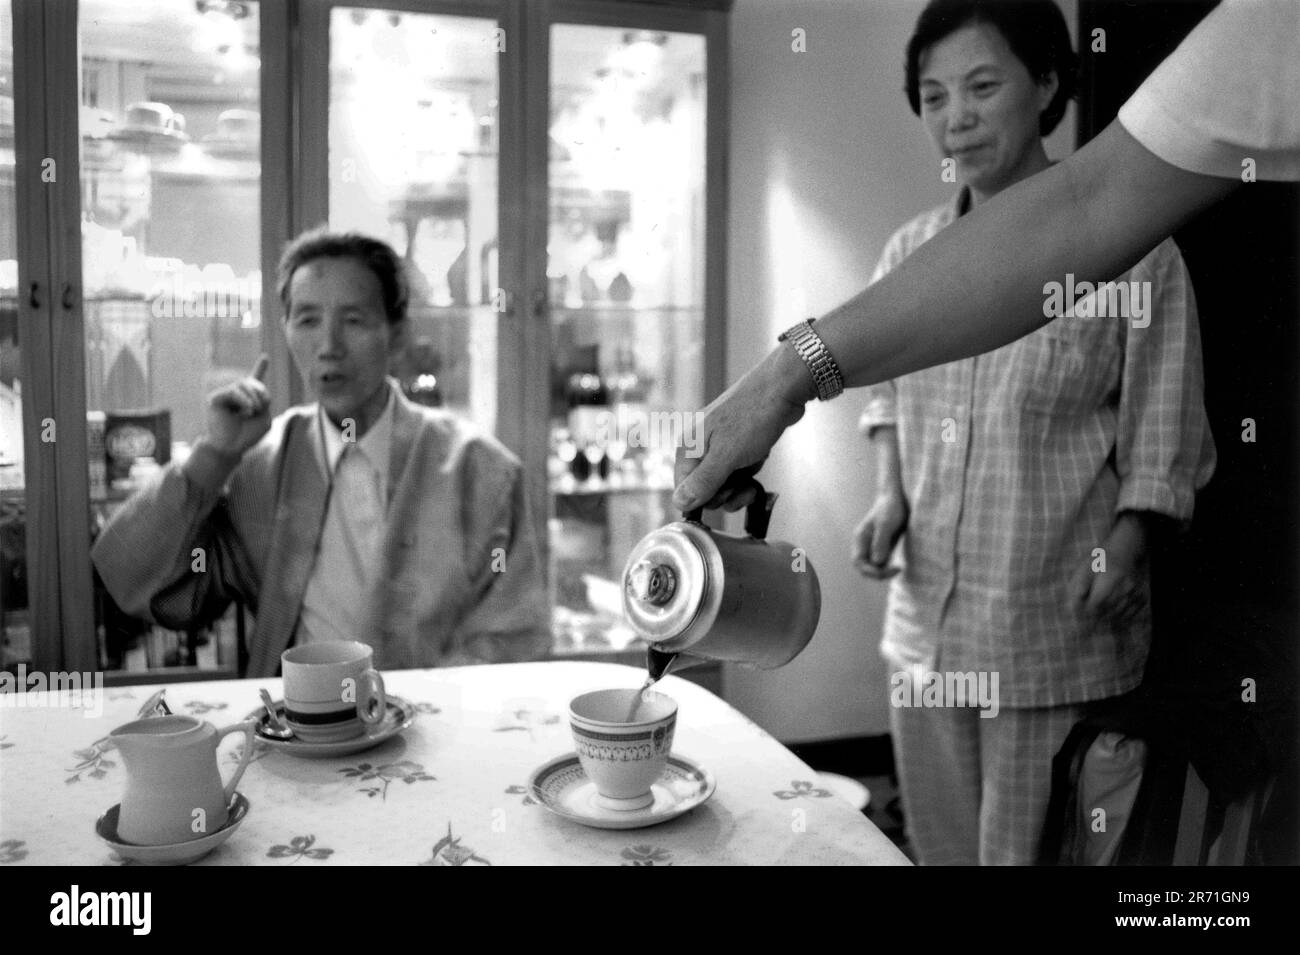 Shanghai China 2000. Der gefeierte Shanghai-Miniaturbildhauer Zhou Changxing trinkt bei einem Freund Kaffee. Es gilt als sehr westlich für Menschen seiner Generation, Kaffee zu trinken, aber seit dem Auftauchen von Starbucks Coffee in Shanghai im Jahr 1999 hat das Getränk begonnen, junge Leute anzuziehen, da der Coffee Shop ein guter Ort ist, um Freunde zu treffen. Lockere und bequeme Kleidung in Form eines Schlafanzugs wird in Shanghai wie in den 1920er Jahren häufig in Innenräumen getragen, und das Tragen von P.j.s außerhalb der Türen ist nicht ungewöhnlich, vor allem im Sommer. 2000s HOMER SYKES Stockfoto